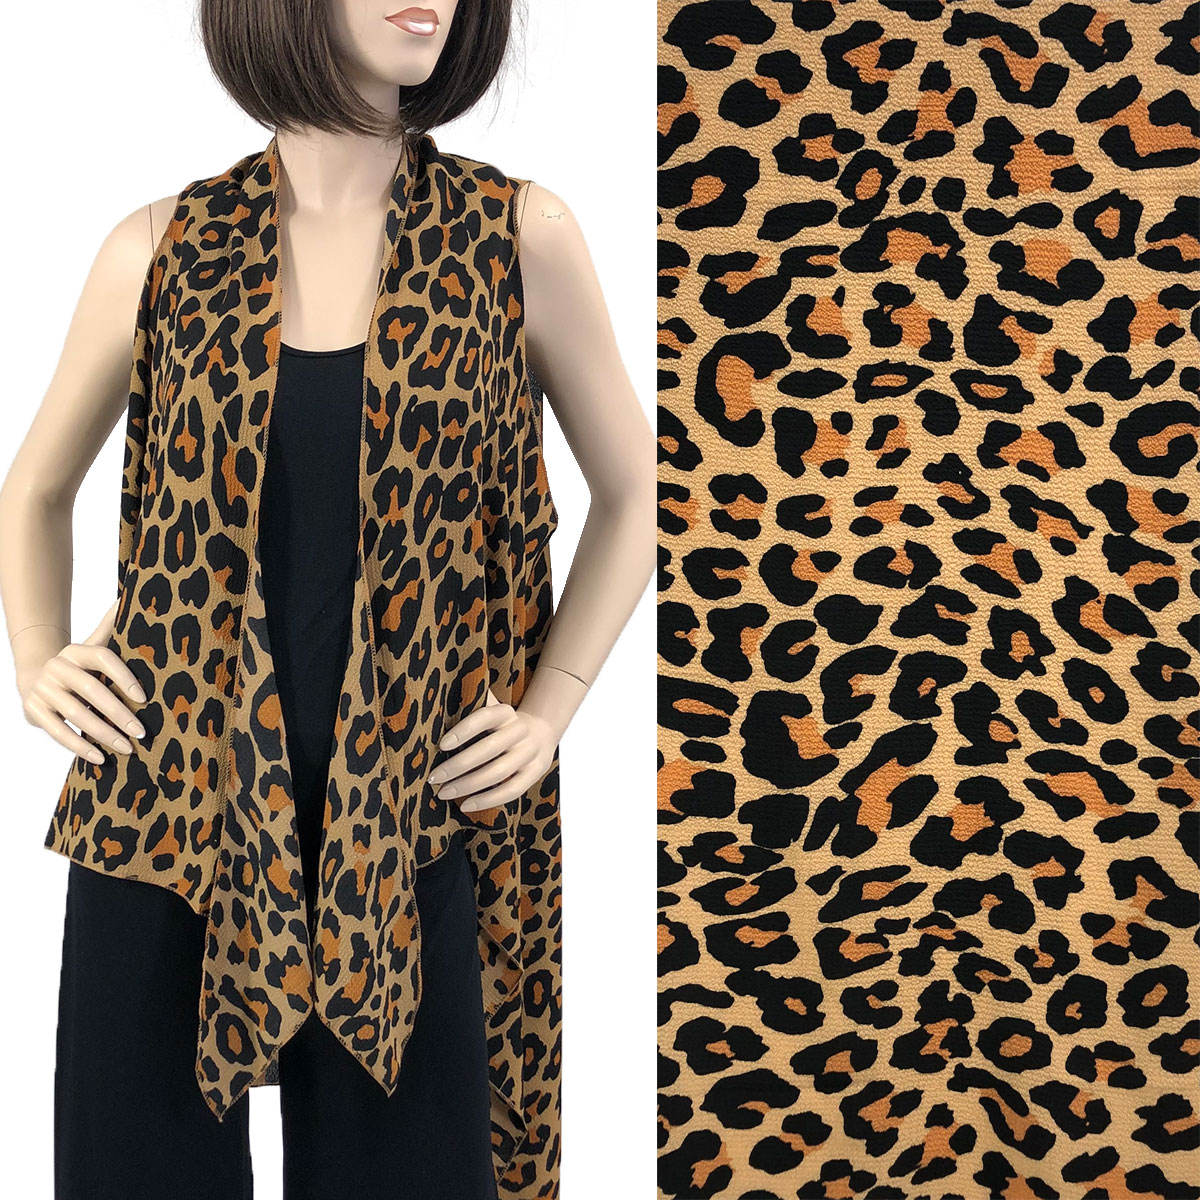 SV1316 Leopard Print Gold - Crepe Vests (Style 2)